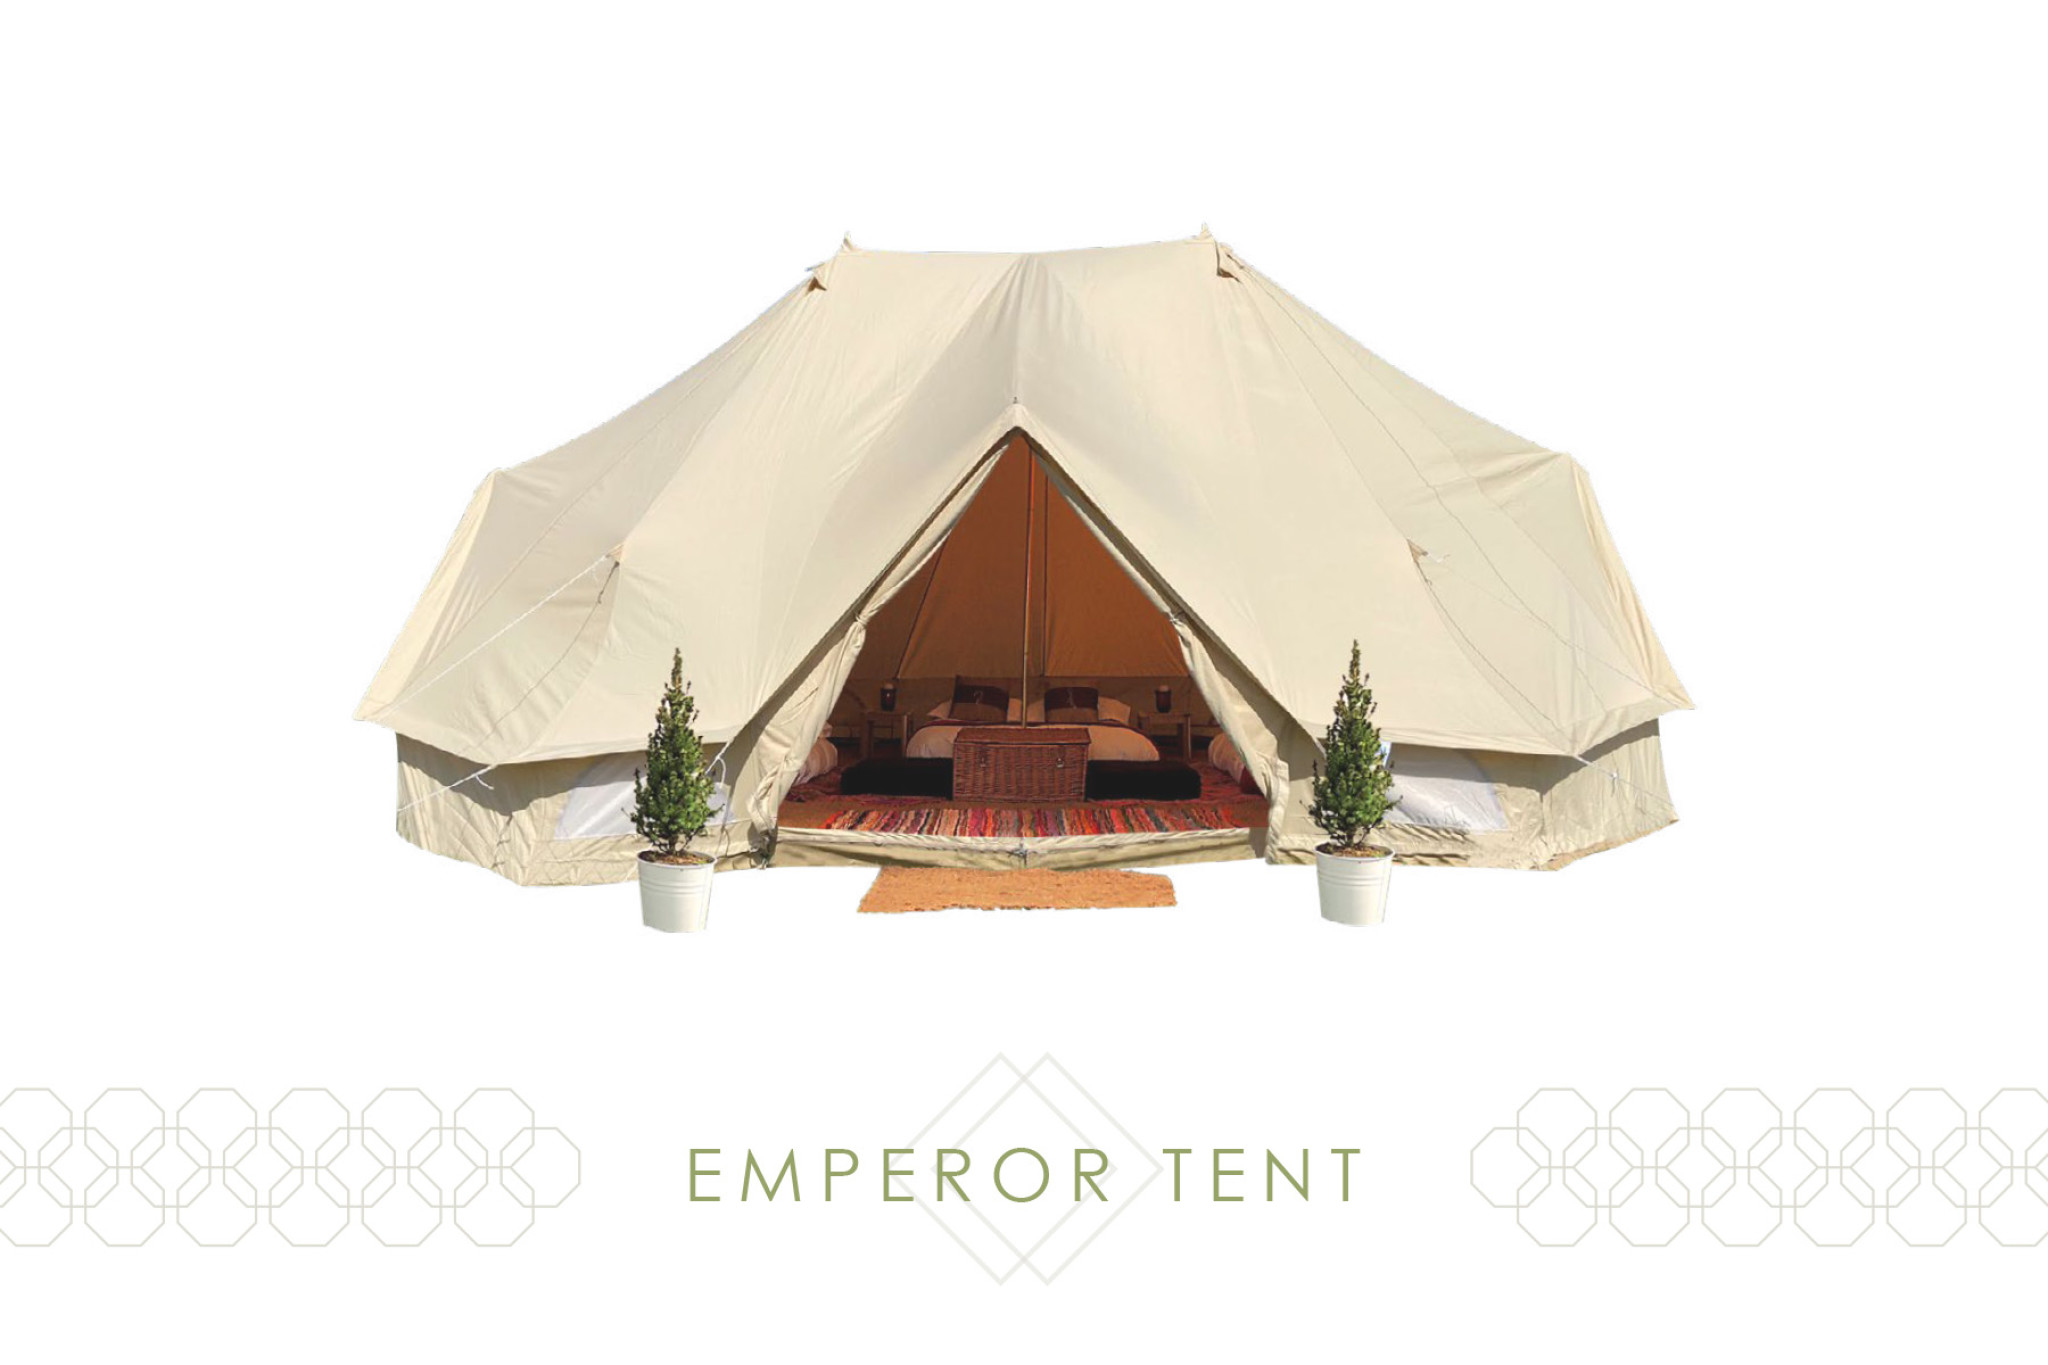 Emperor Tent - WP site.jpg